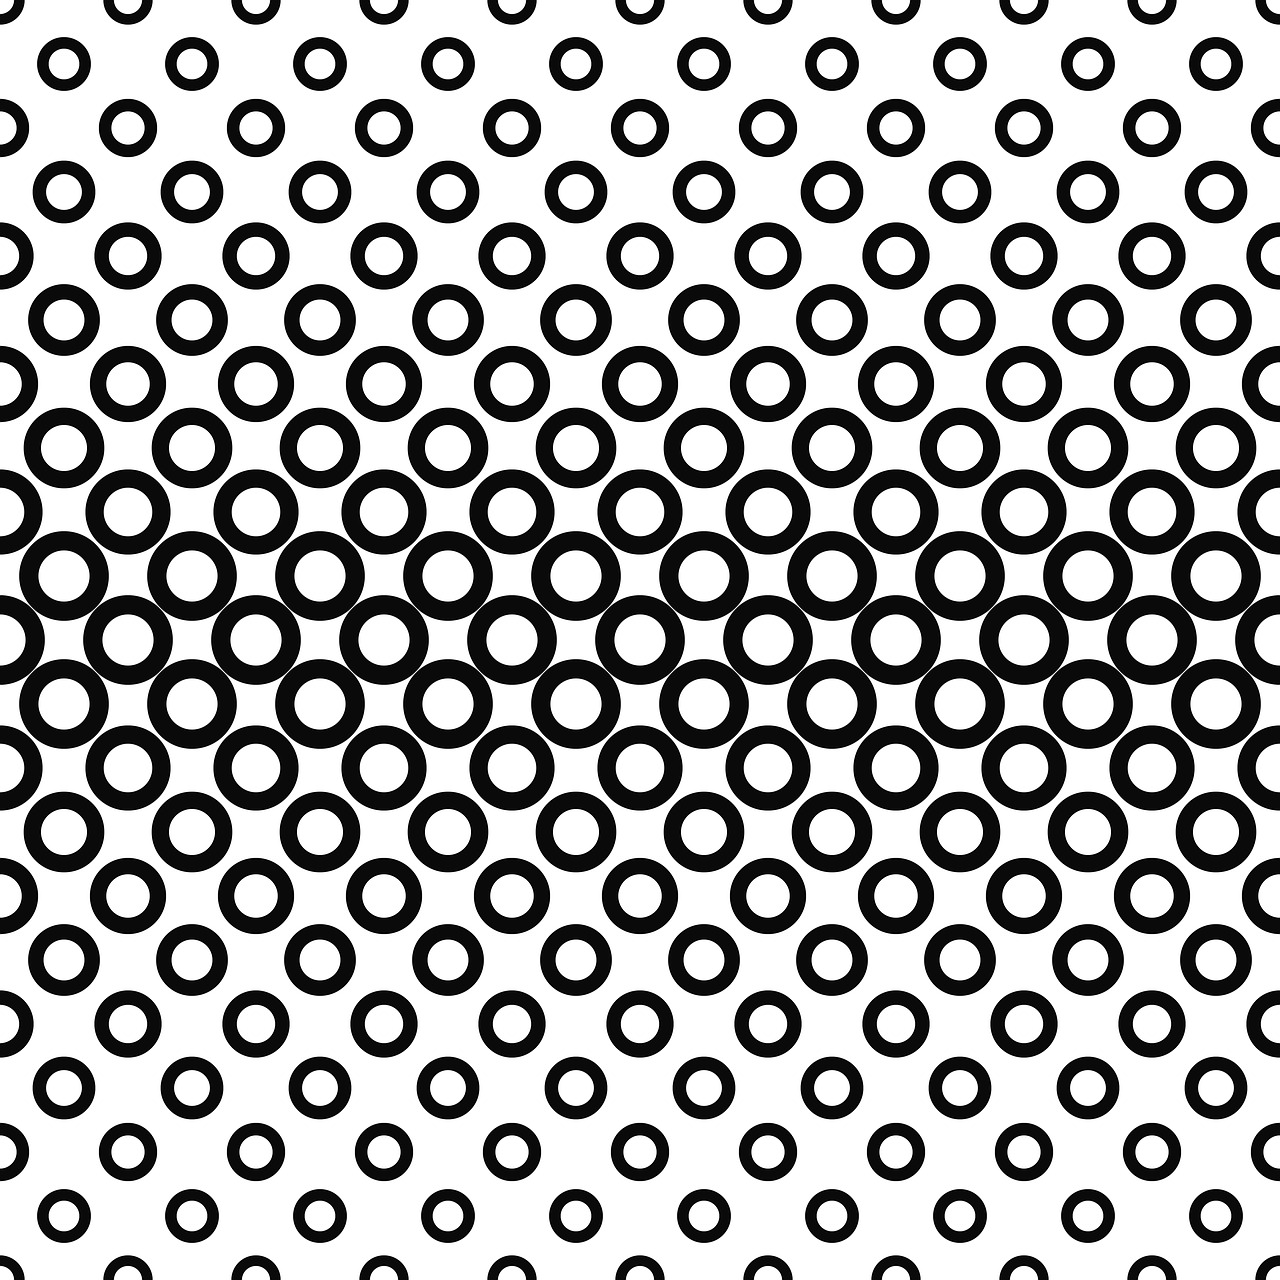 pattern polkadot circle free photo